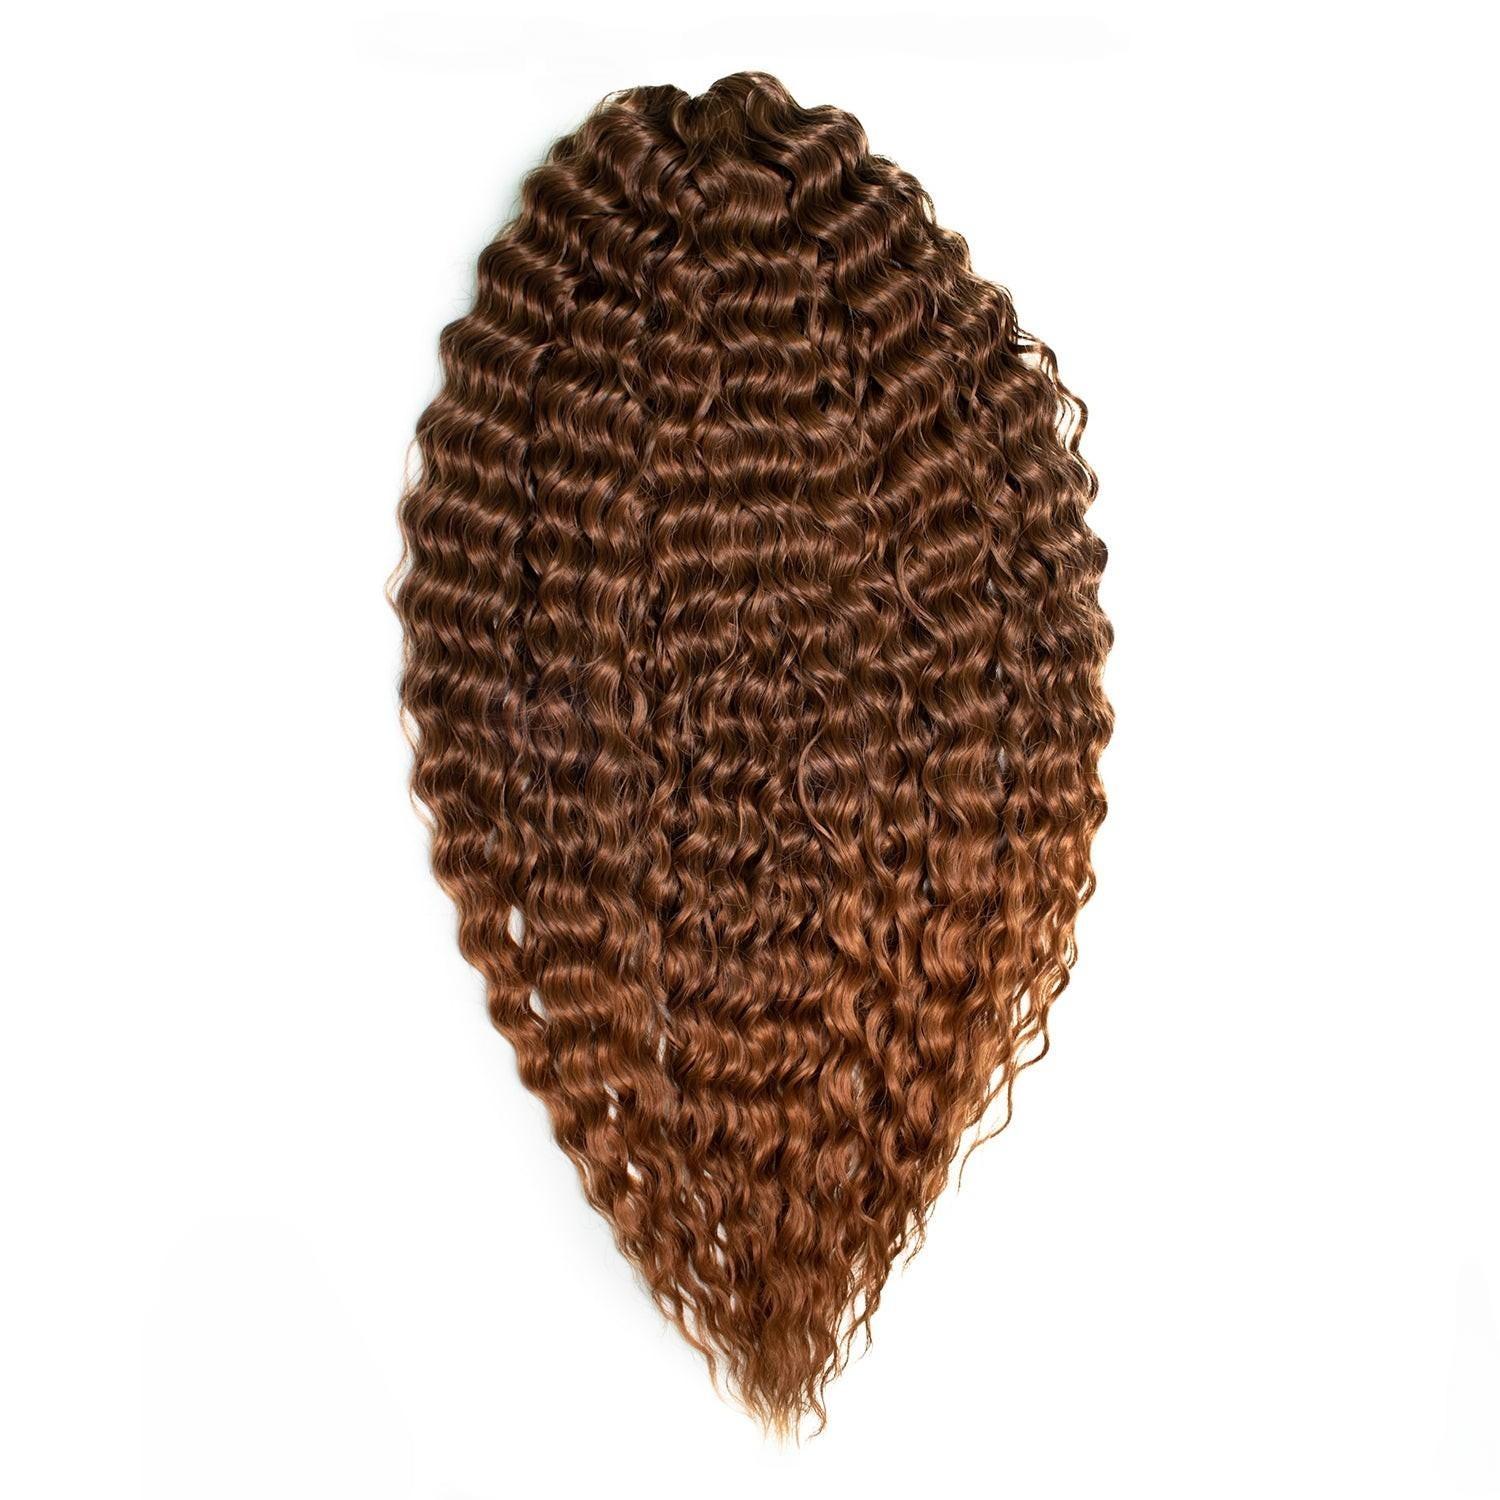 Афрокудри для плетения волос Ariel цвет T4 30 каштановый длина 60см вес 300г афрокудри для плетения волос ariel ариэль fire оранжевый длина 66см вес 300г